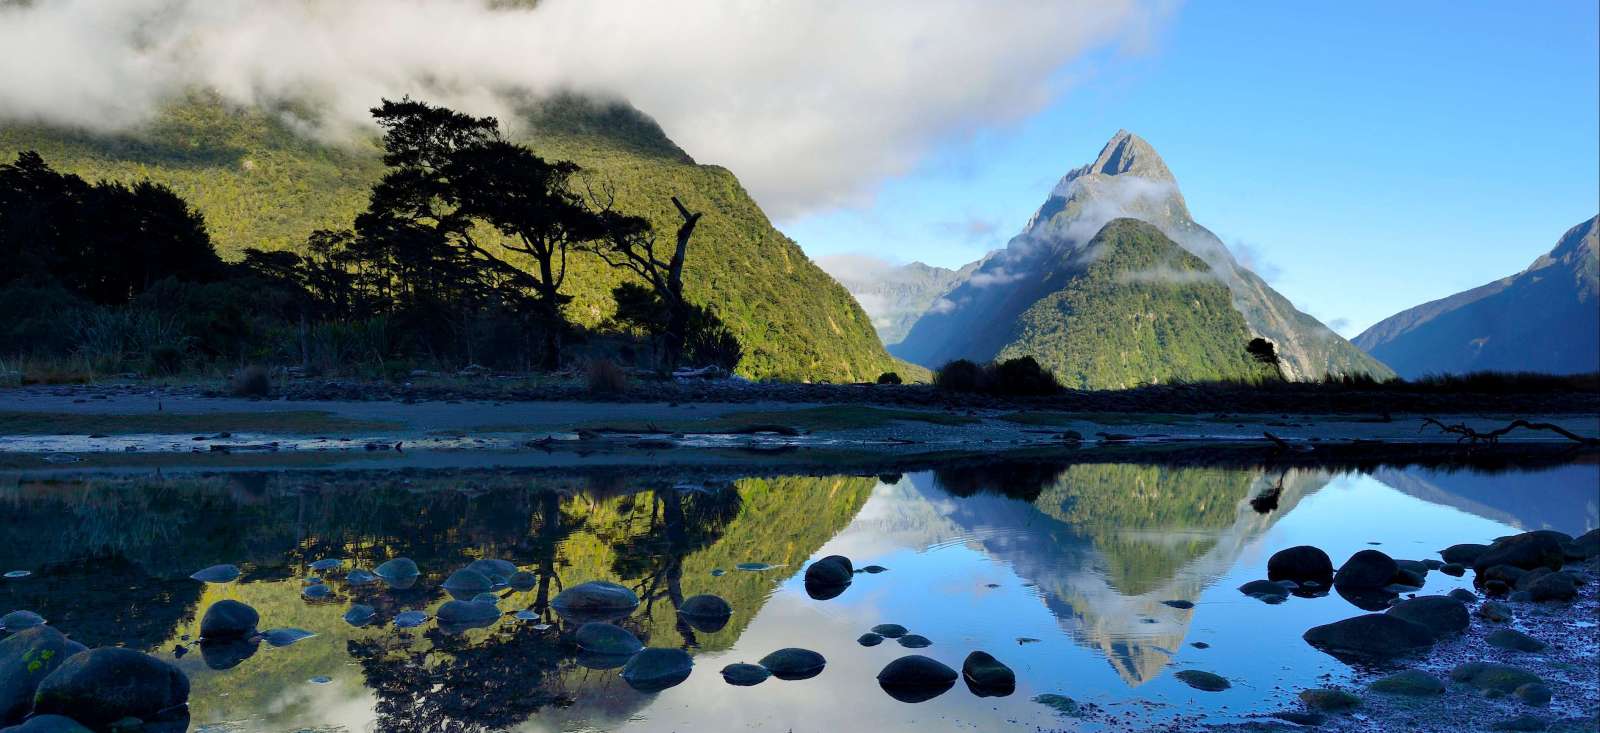 Voyage découverte - Splendeurs du Sud de la Nouvelle Zélande